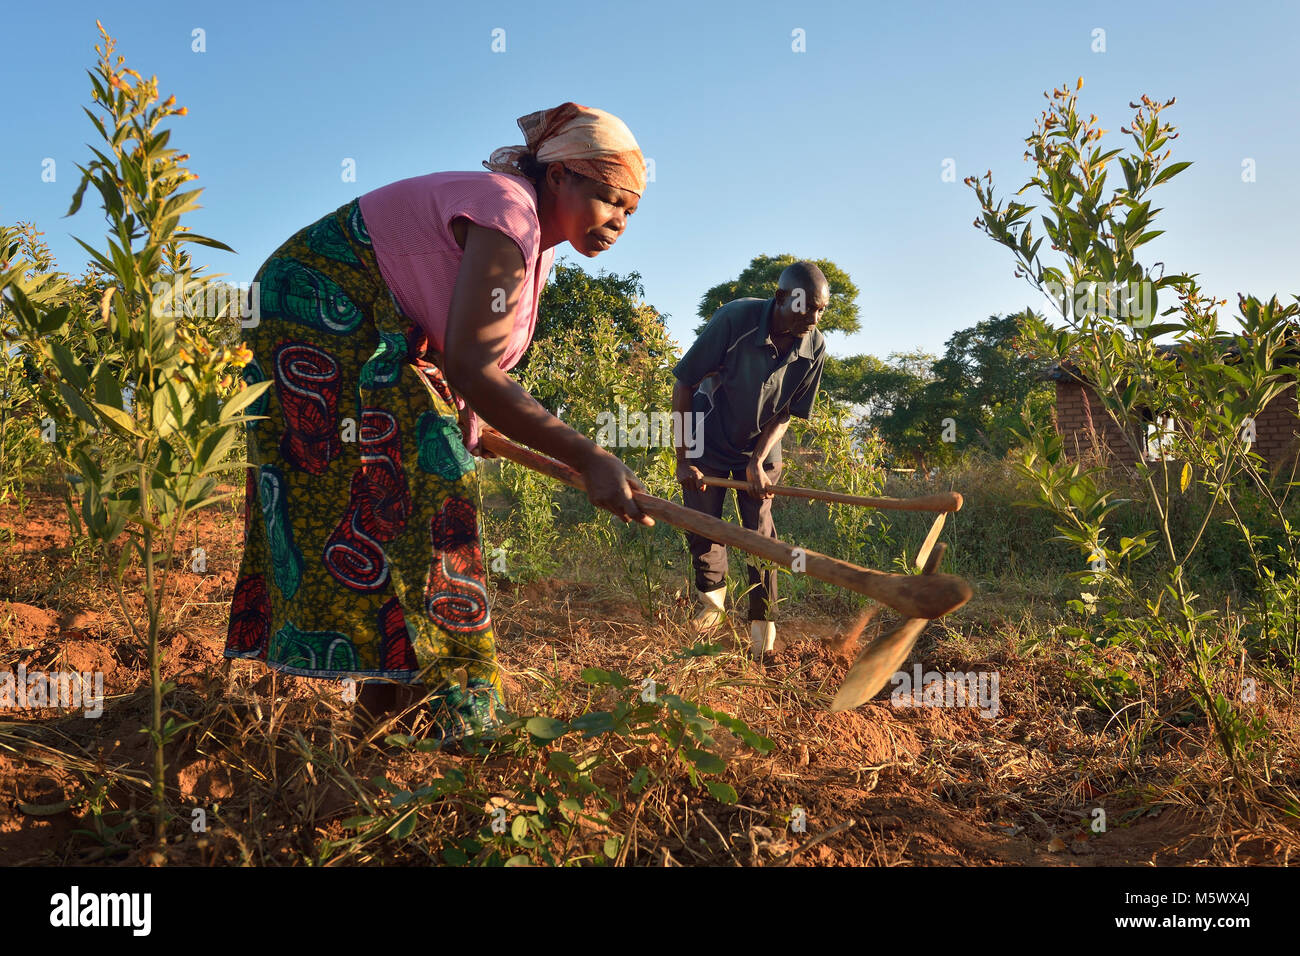 Mariet Hara y su marido pulsando Moyo trabajar en su granja de Edundu, Malawi. Foto de stock